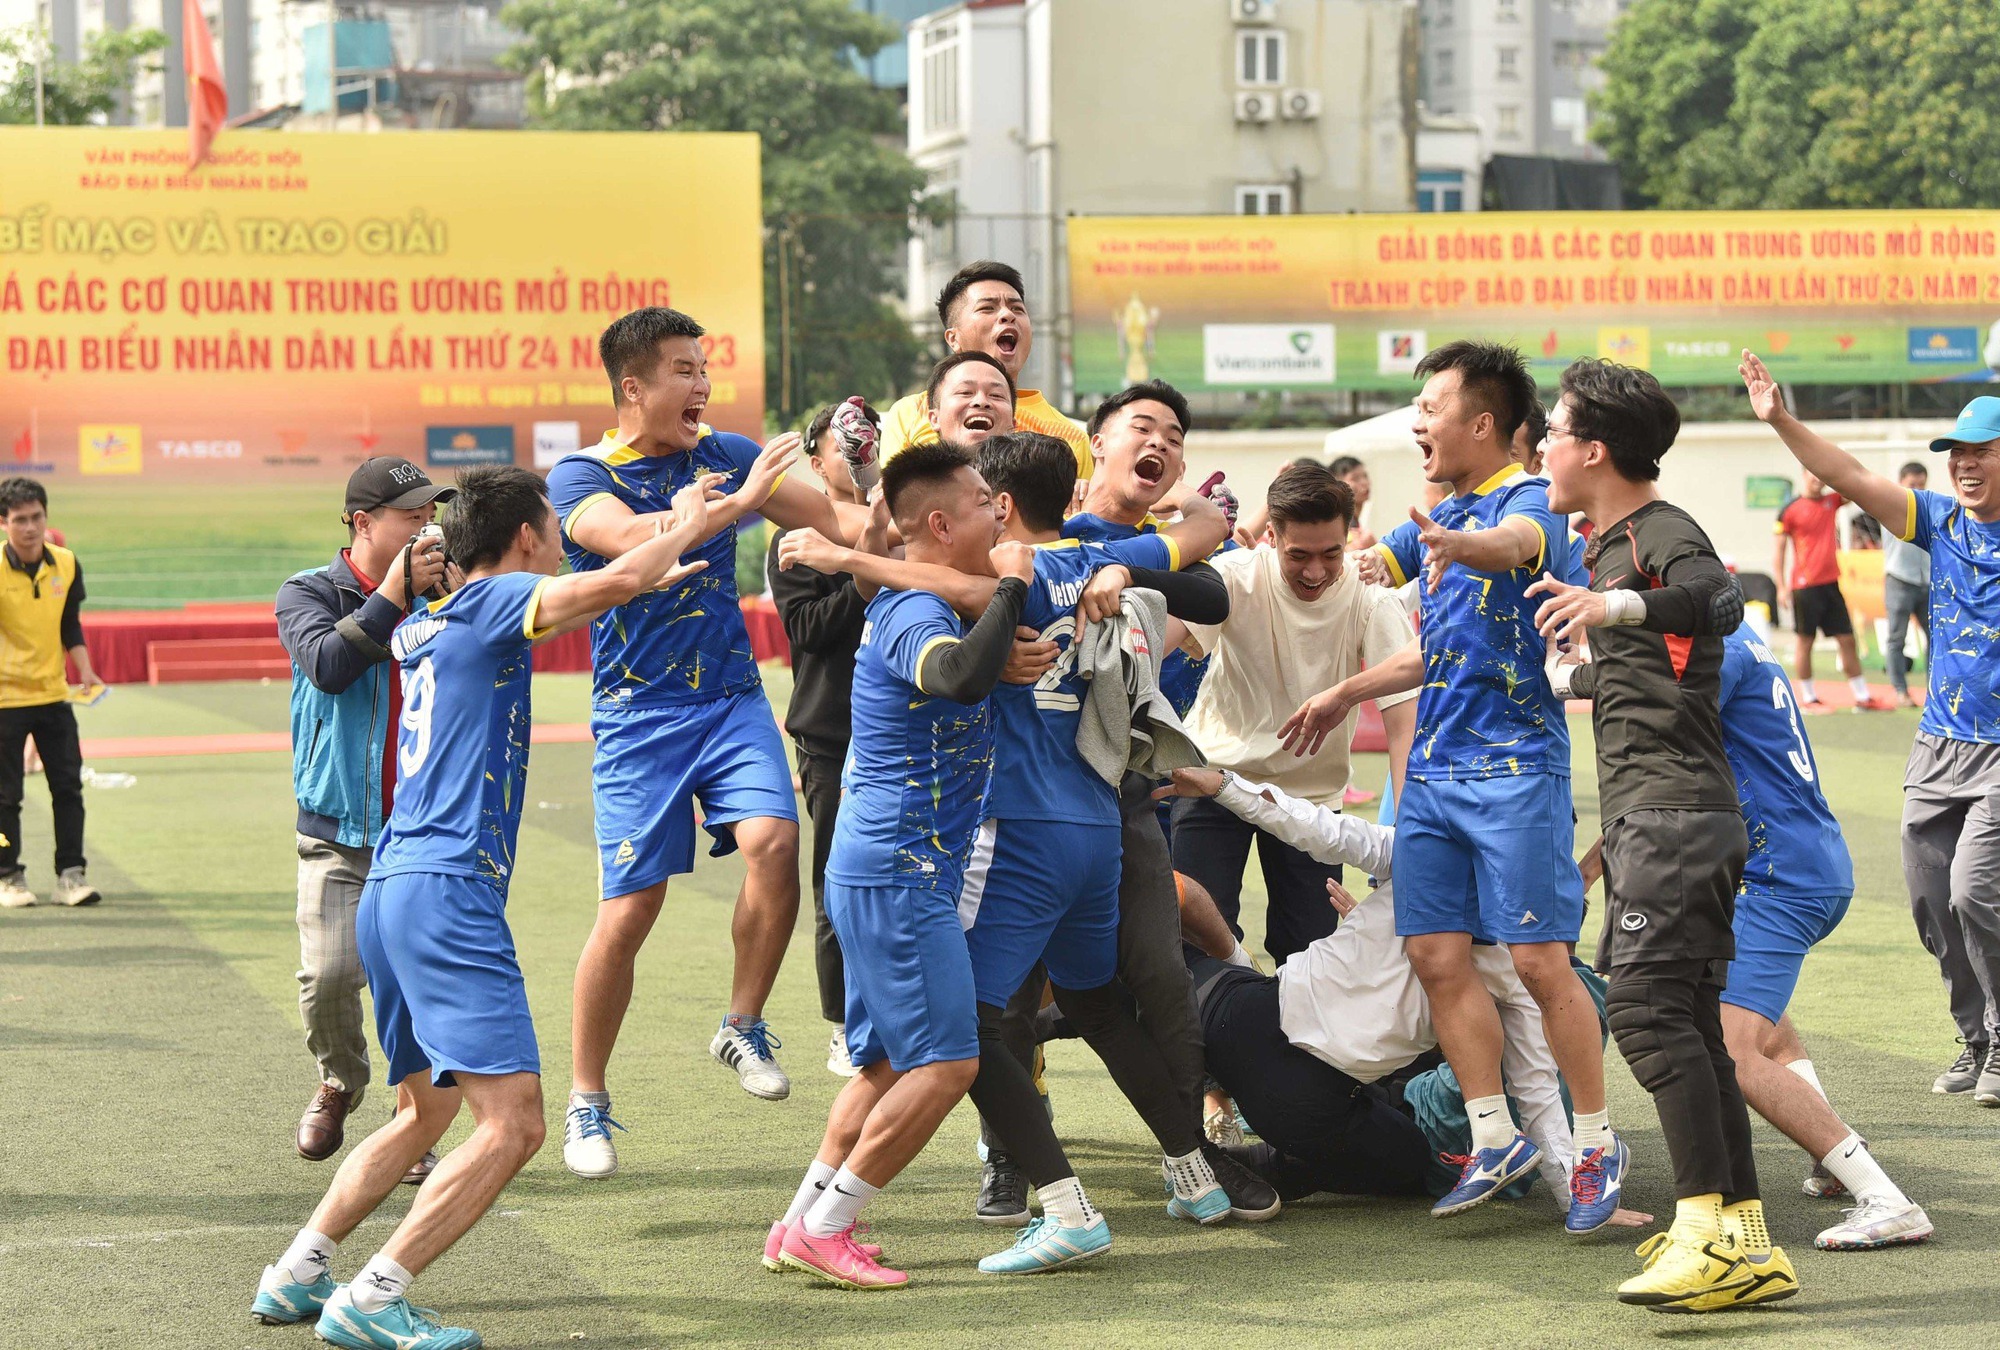 Giải bóng đá tranh Cúp Báo Đại biểu Nhân dân đã tìm ra nhà vô địch - Ảnh 1.